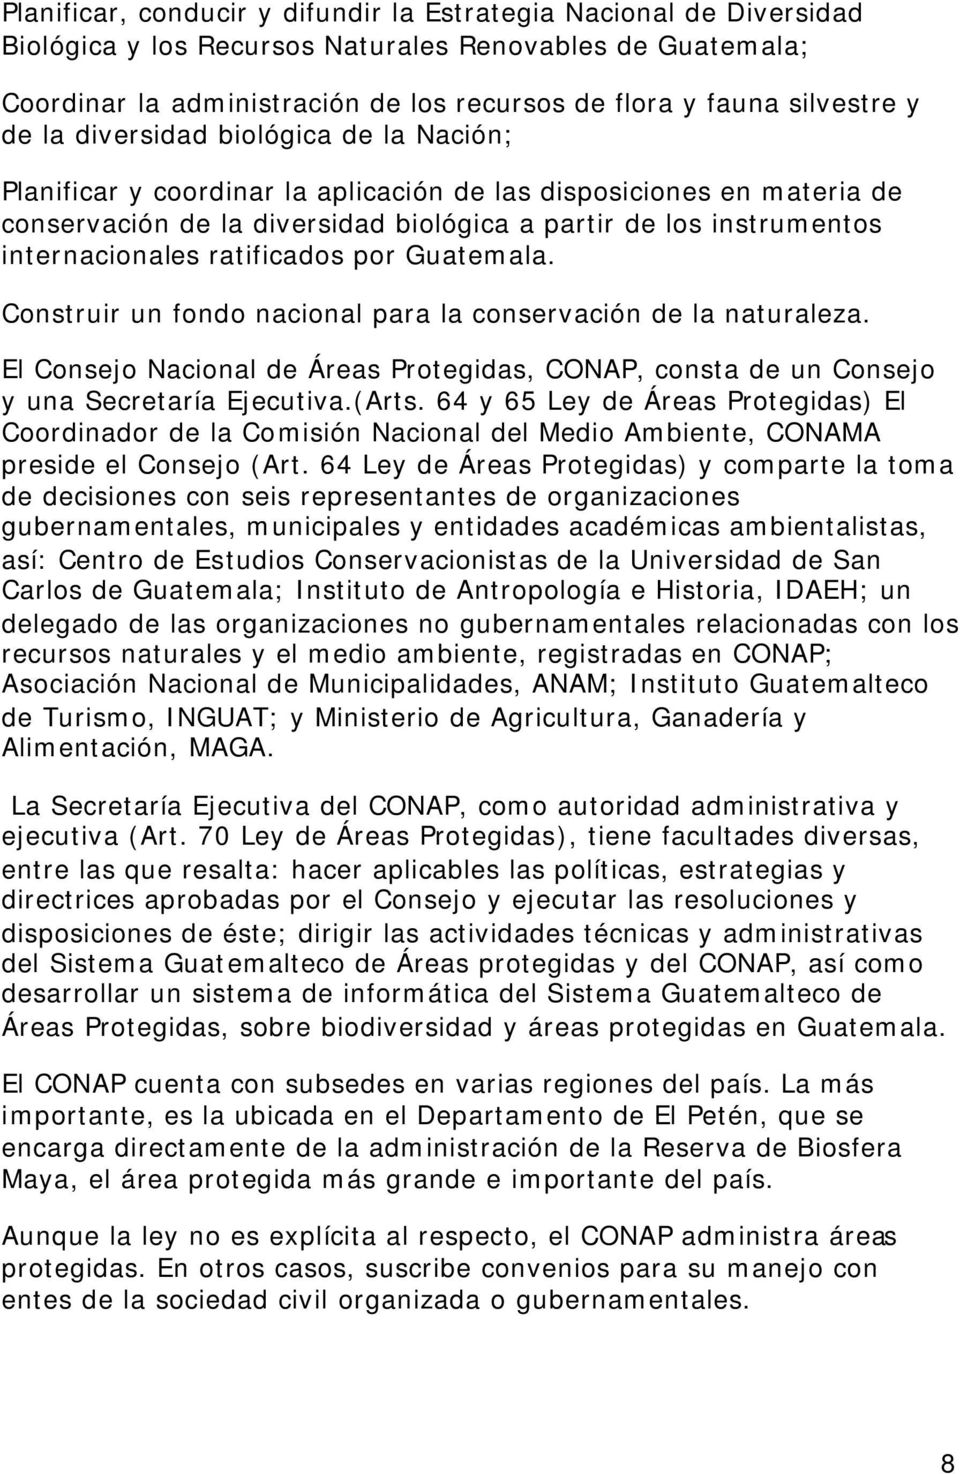 ratificados por Guatemala. Construir un fondo nacional para la conservación de la naturaleza. El Consejo Nacional de Áreas Protegidas, CONAP, consta de un Consejo y una Secretaría Ejecutiva.(Arts.